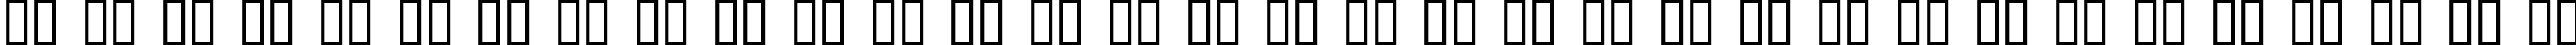 Пример написания русского алфавита шрифтом CHR32